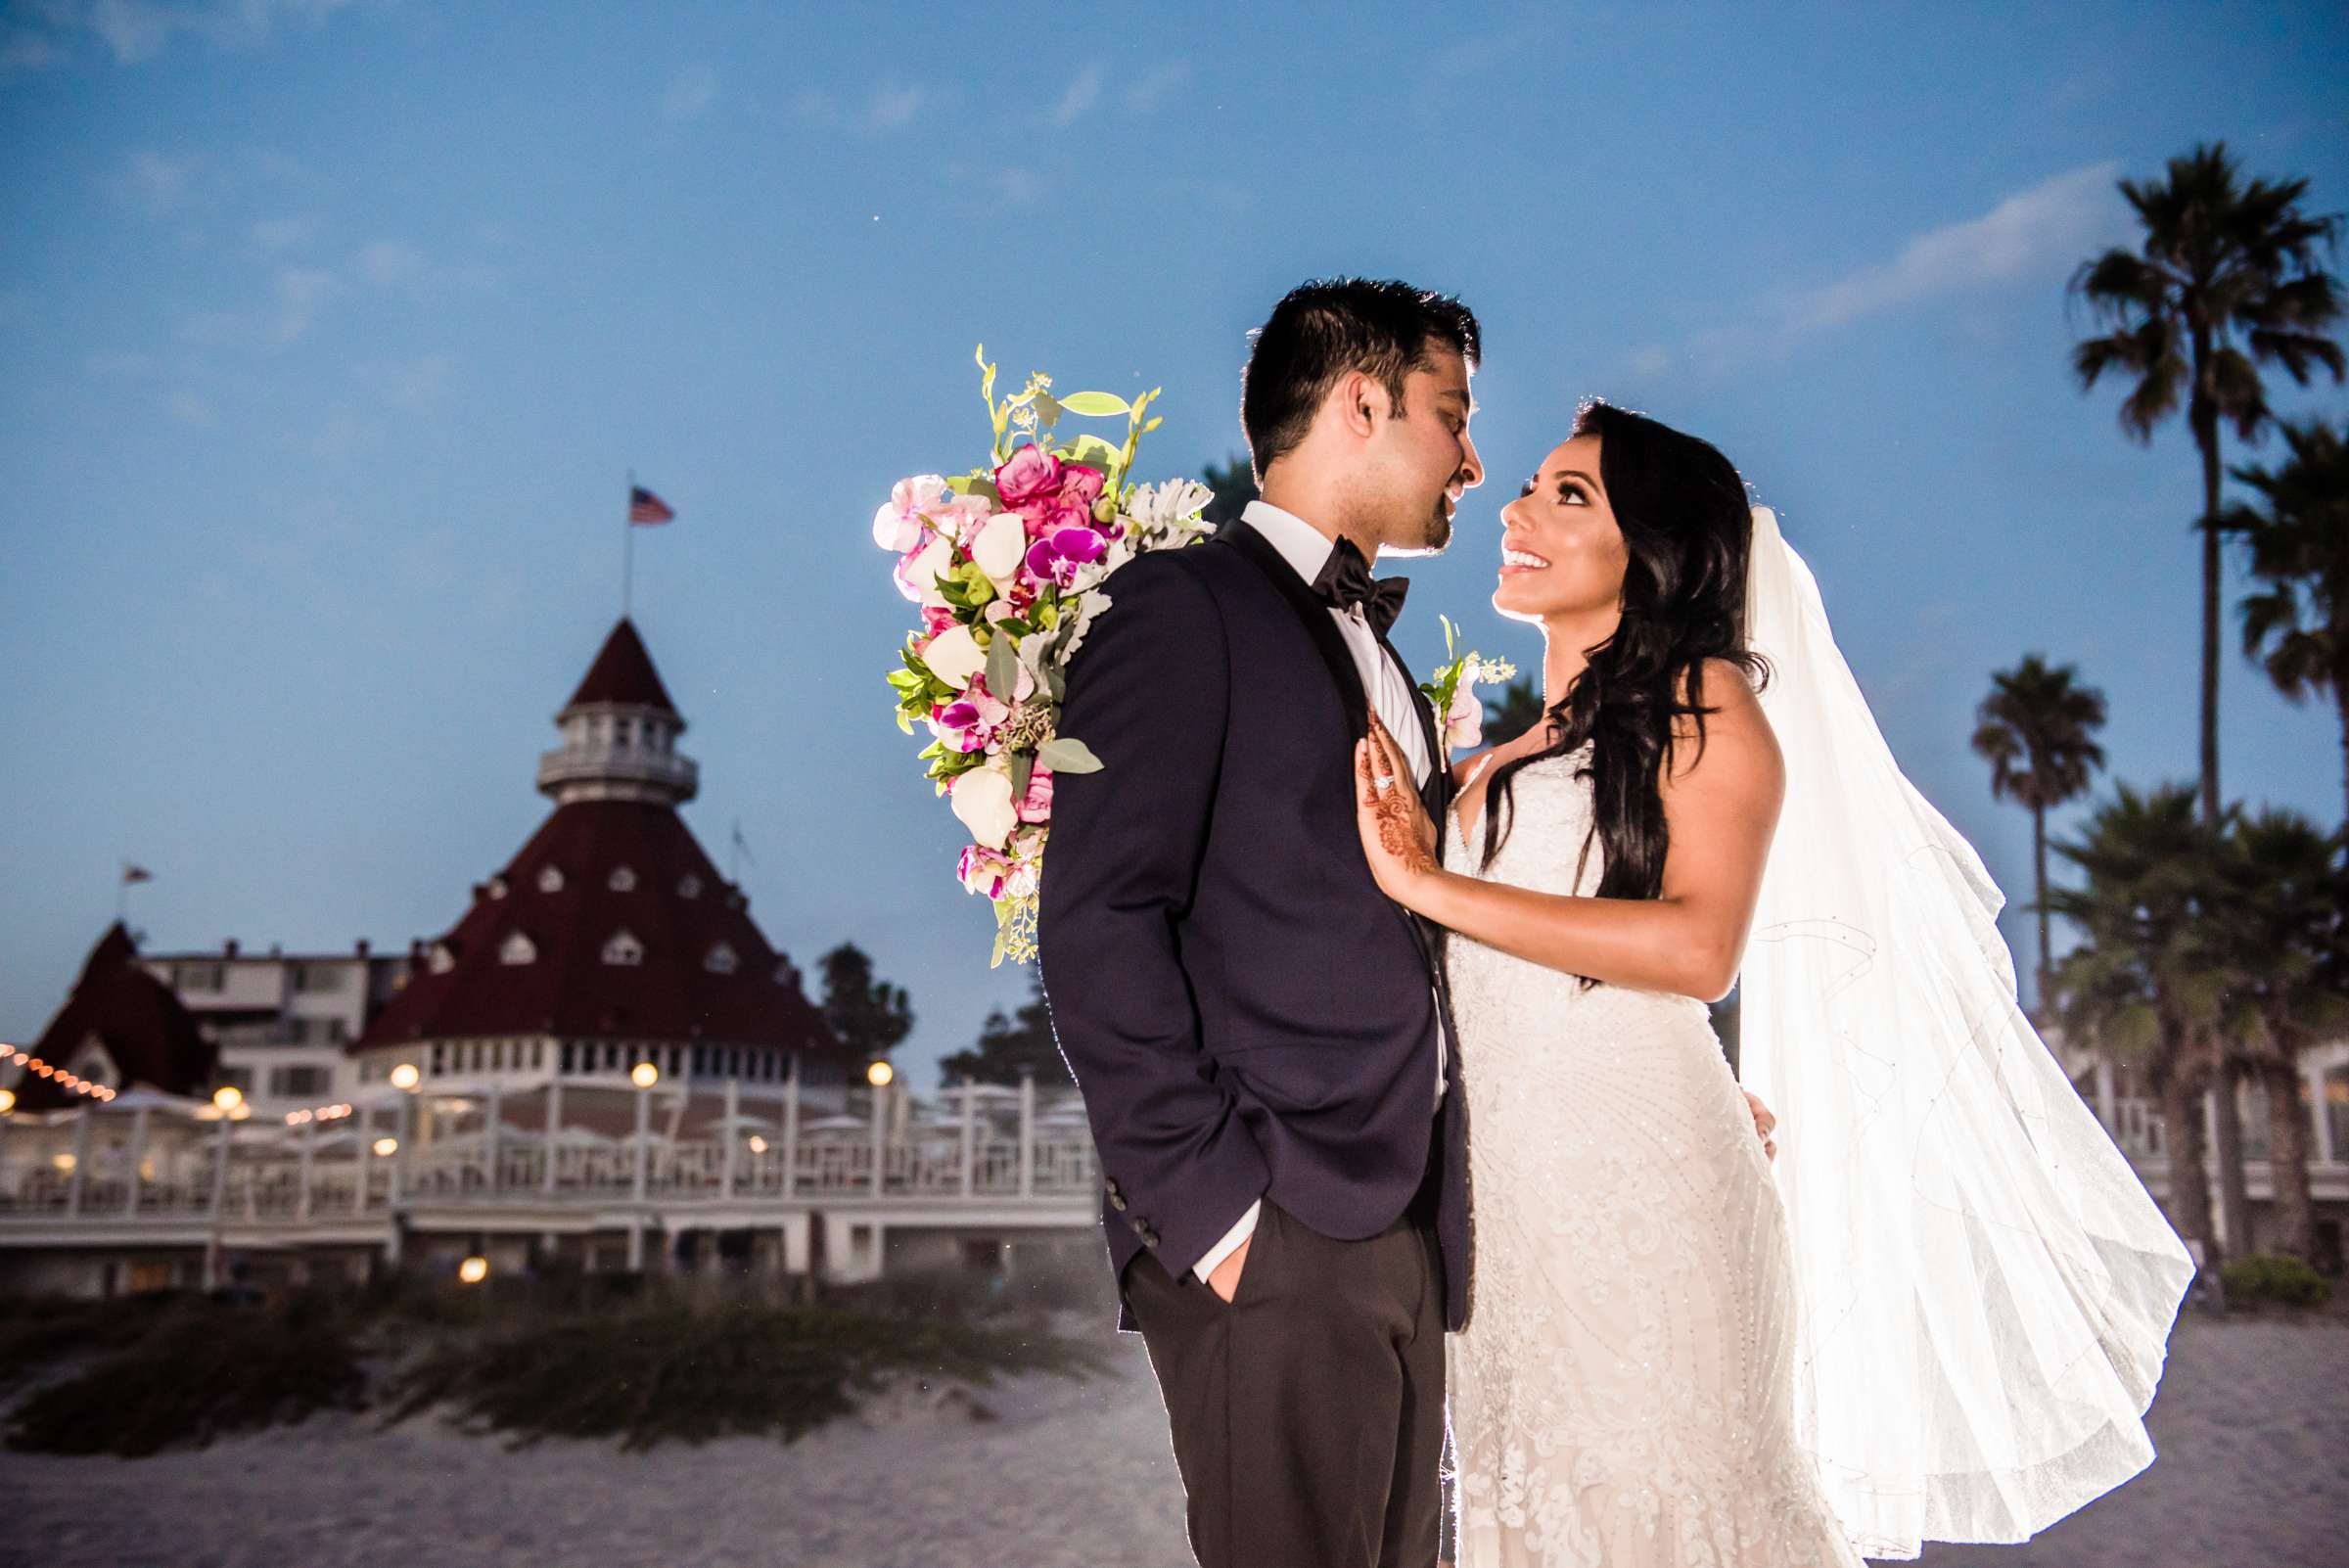 Hotel Del Coronado Wedding, Sabrina and Gehaan Wedding Photo #409154 by True Photography